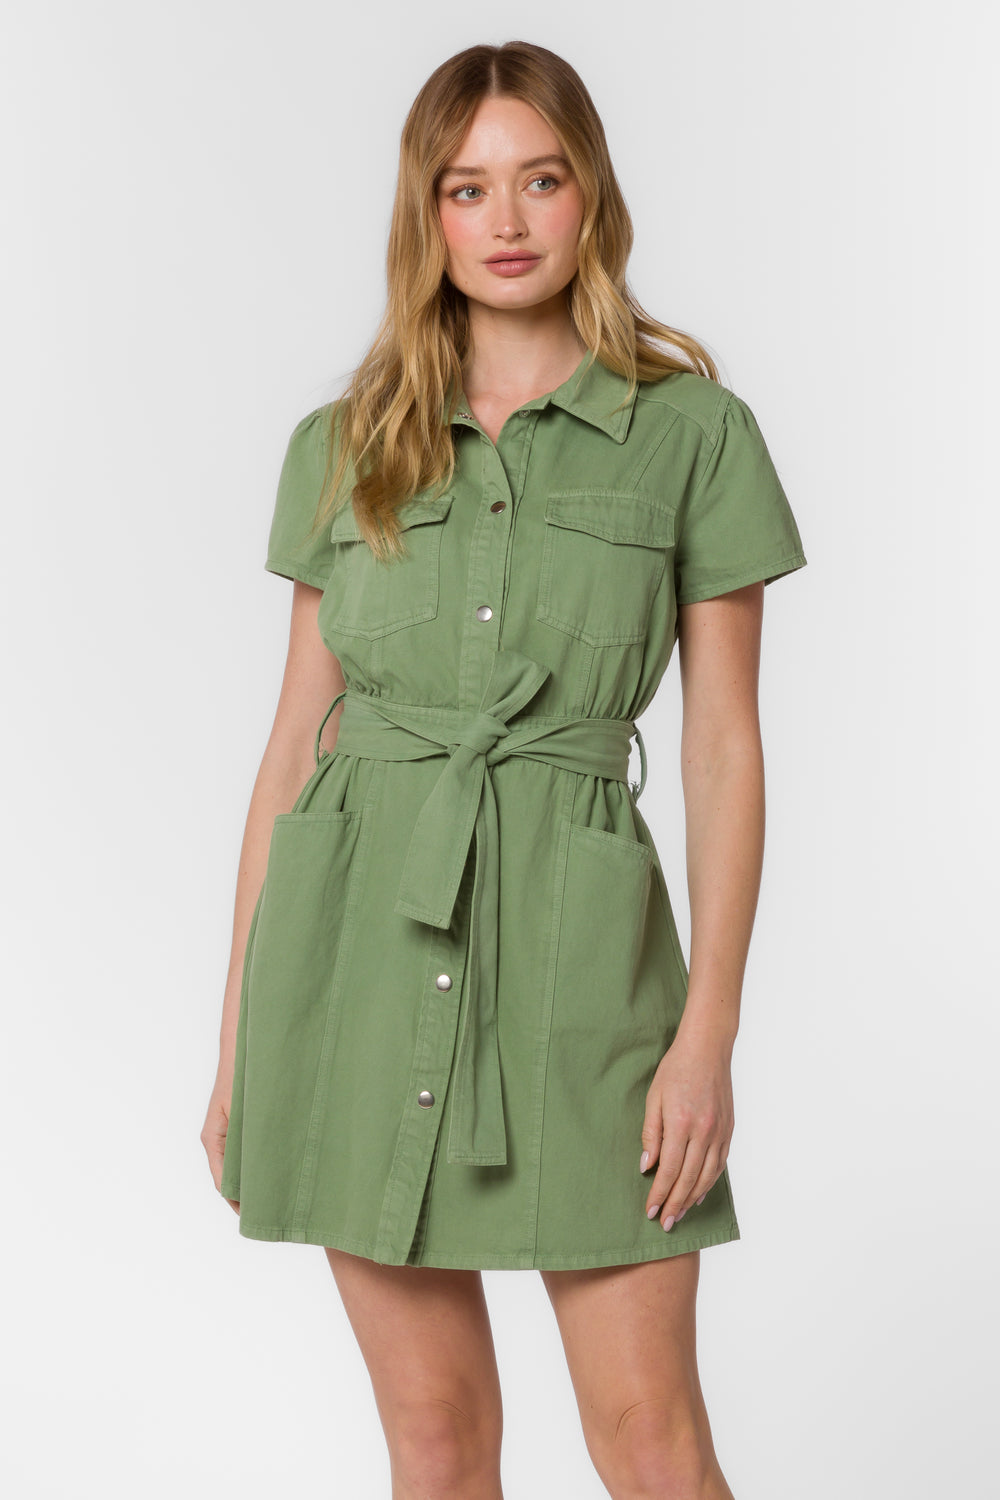 Fonda Tea Leaf Green Dress - Dresses - Velvet Heart Clothing